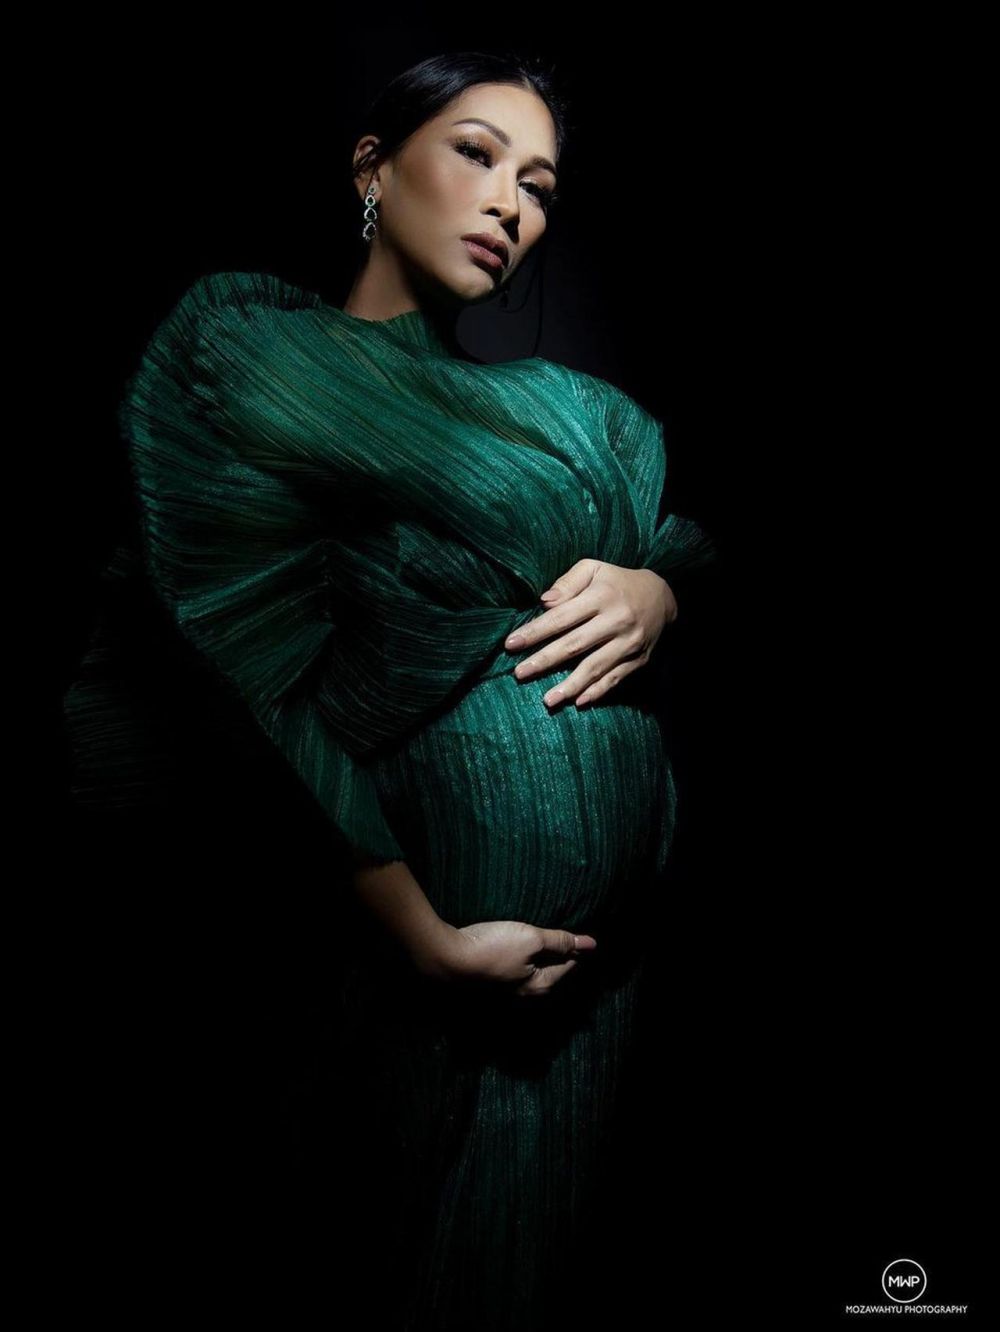 8 Gaya maternity shoot Tata Janeeta, tertutup namun tetap elegan